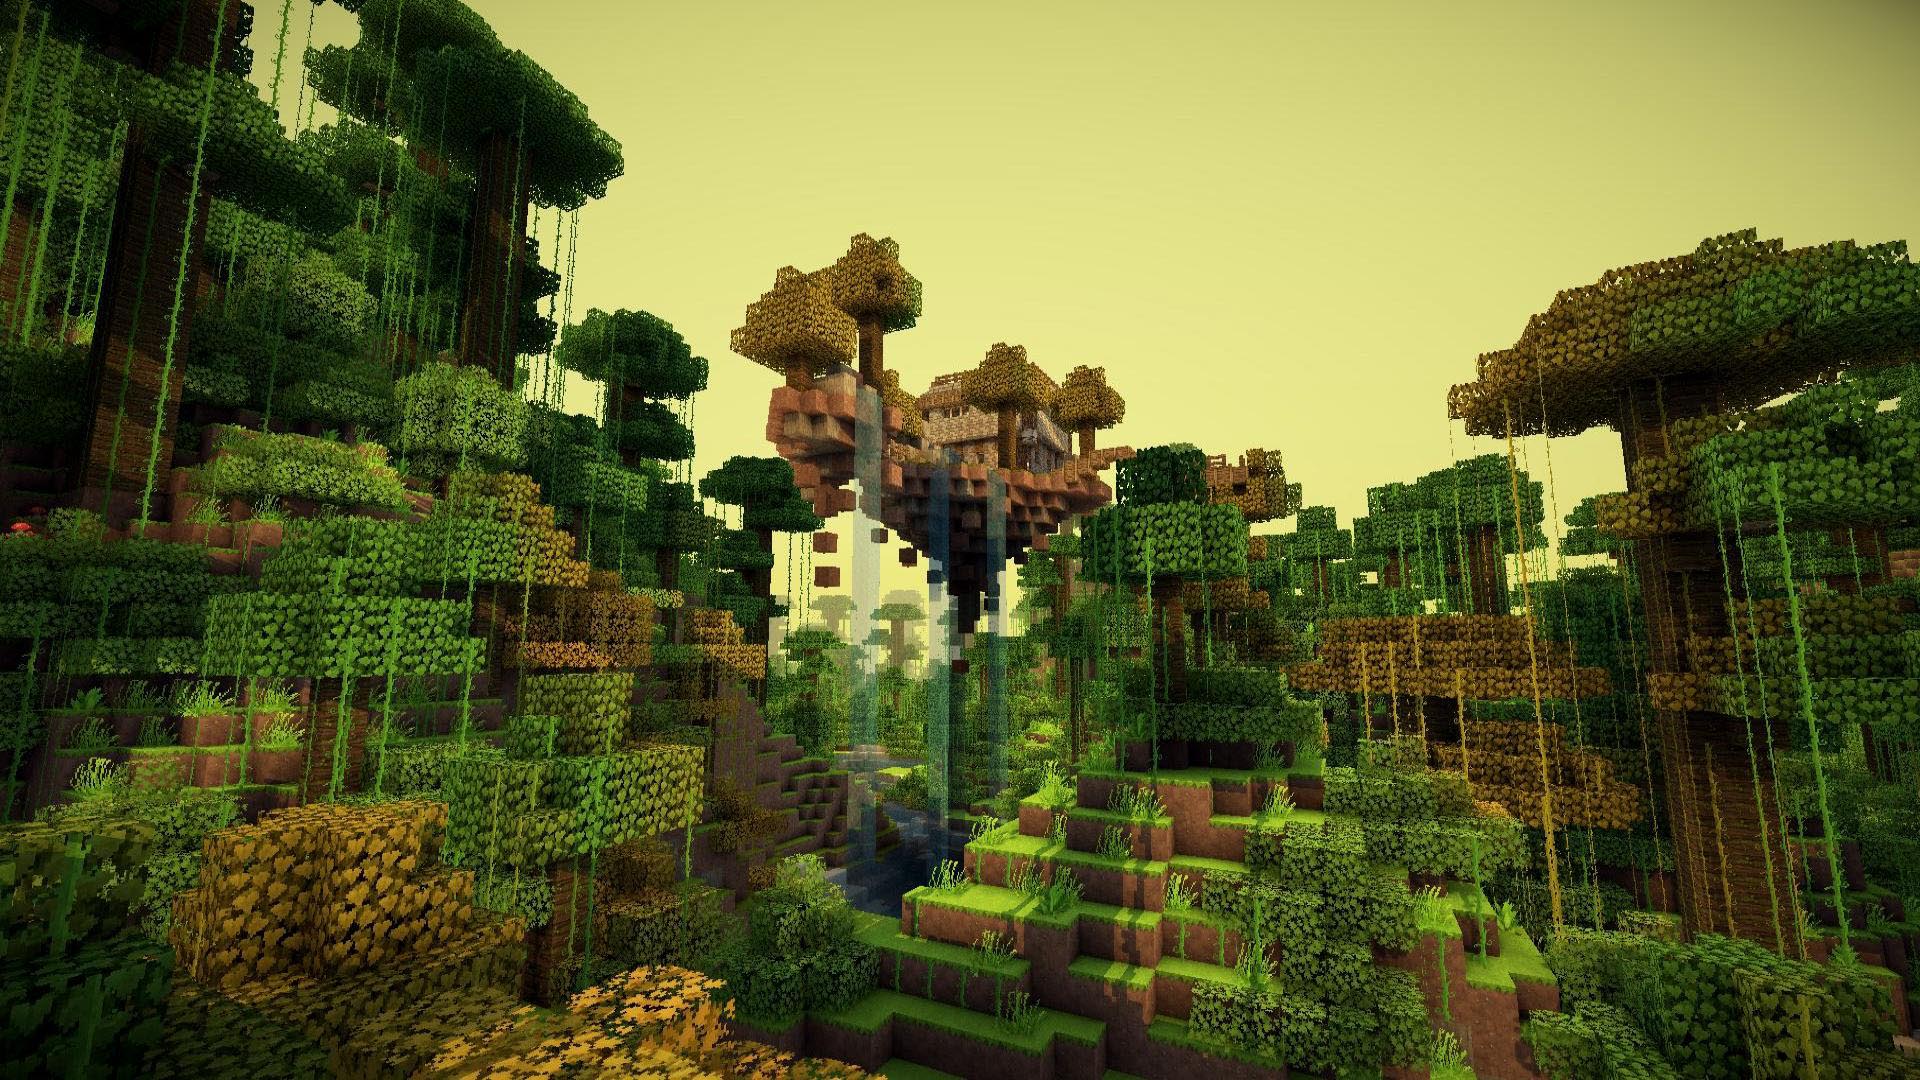 Jungle in Minecraft